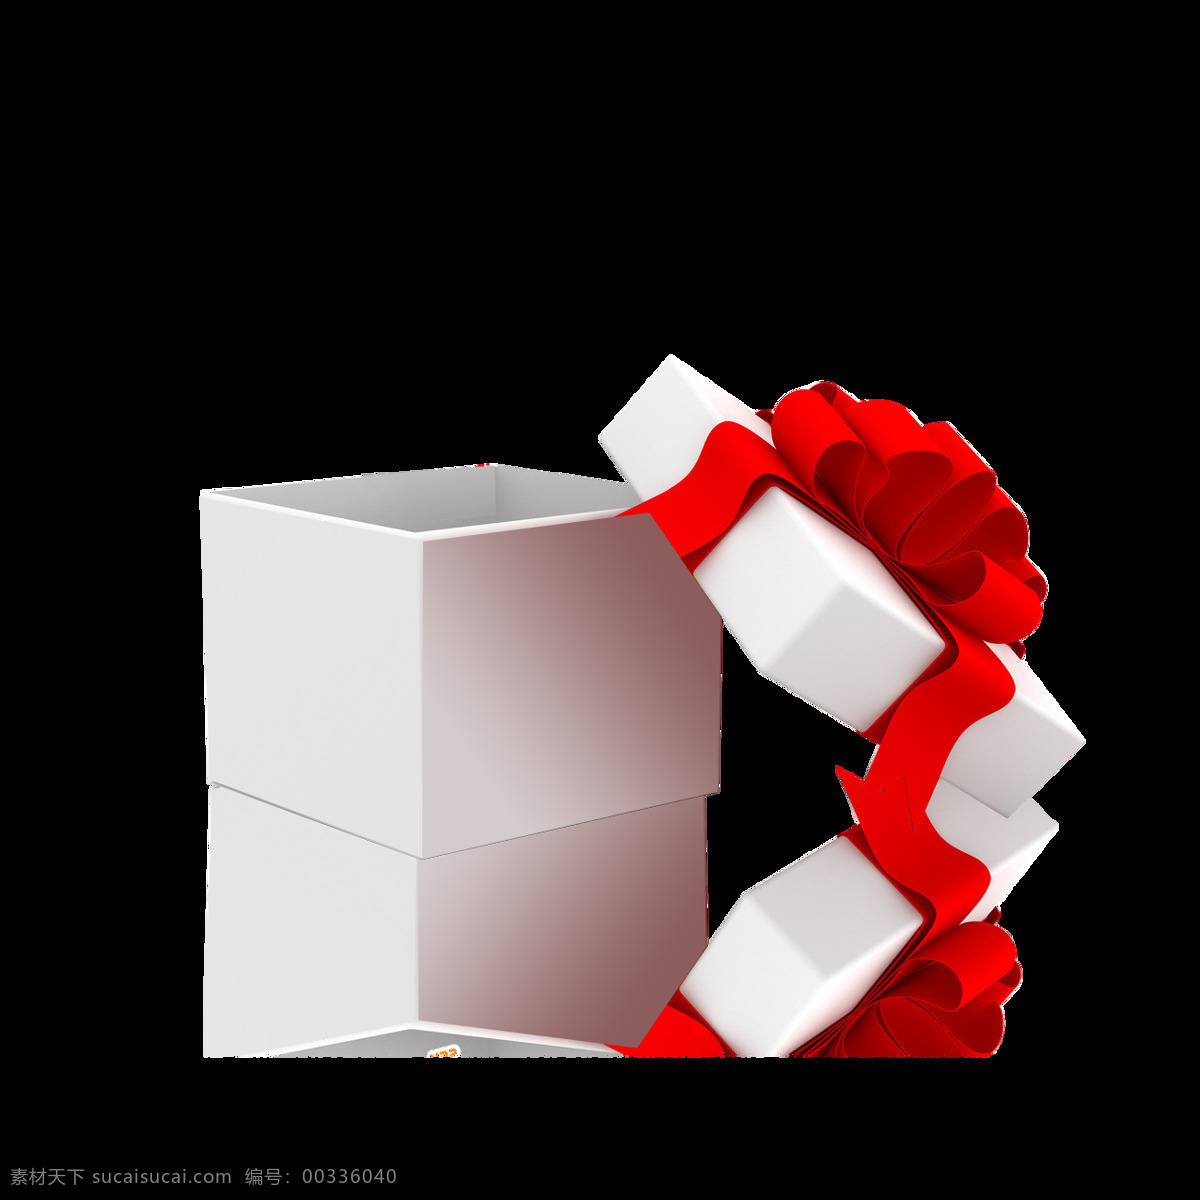 打开 包装 礼品盒 礼盒图片素材 盒子矢量图 礼物 促销海报元素 红包 彩带 卡通礼盒 礼品包装 节日礼盒 礼品礼盒 情人节礼物 包装礼品盒 打开礼品盒